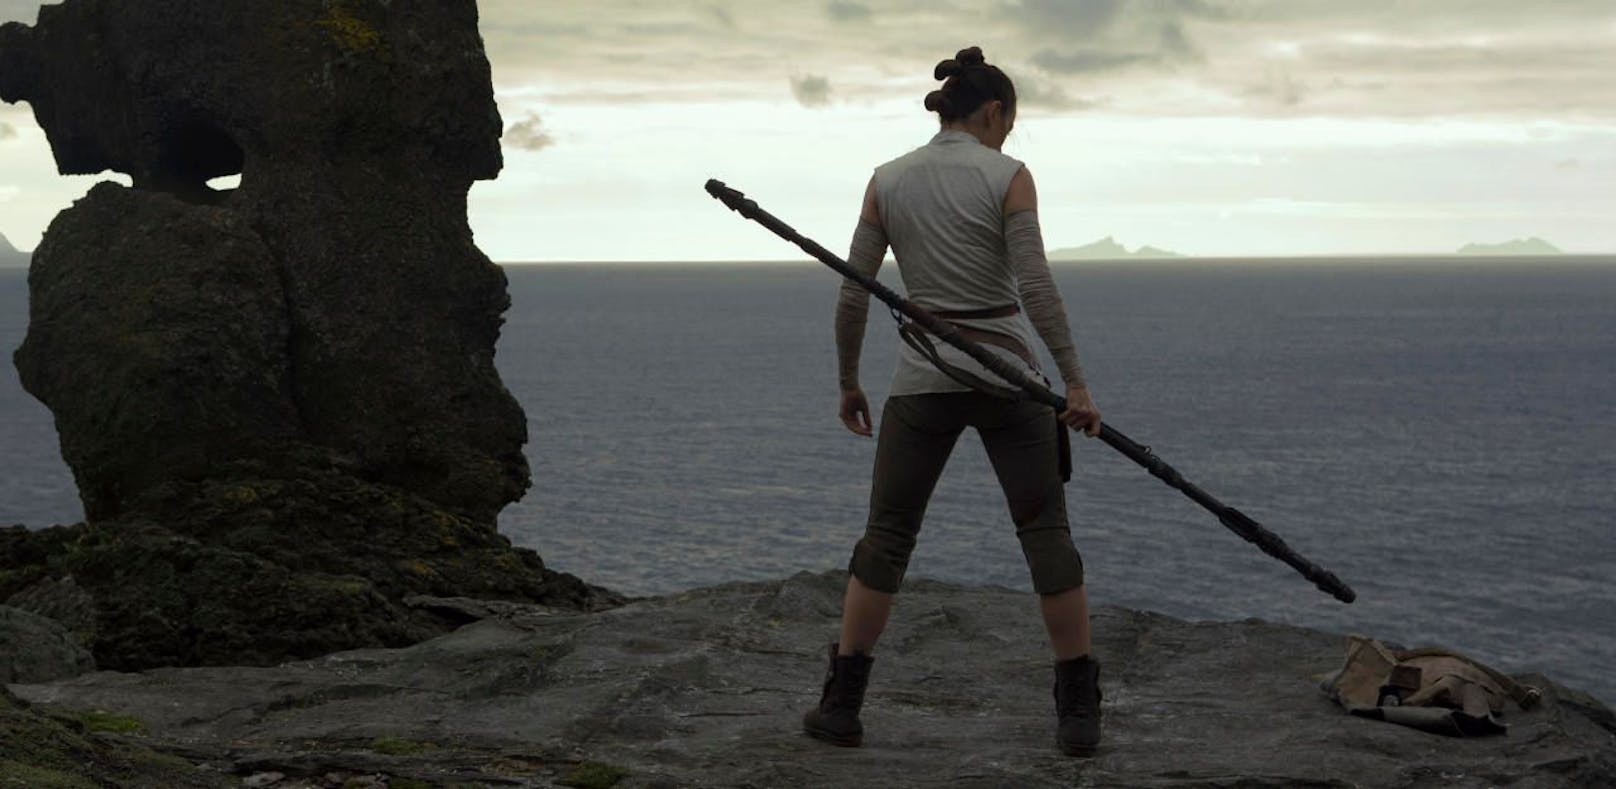 Regisseur warnt vor neuem "Star Wars"-Trailer